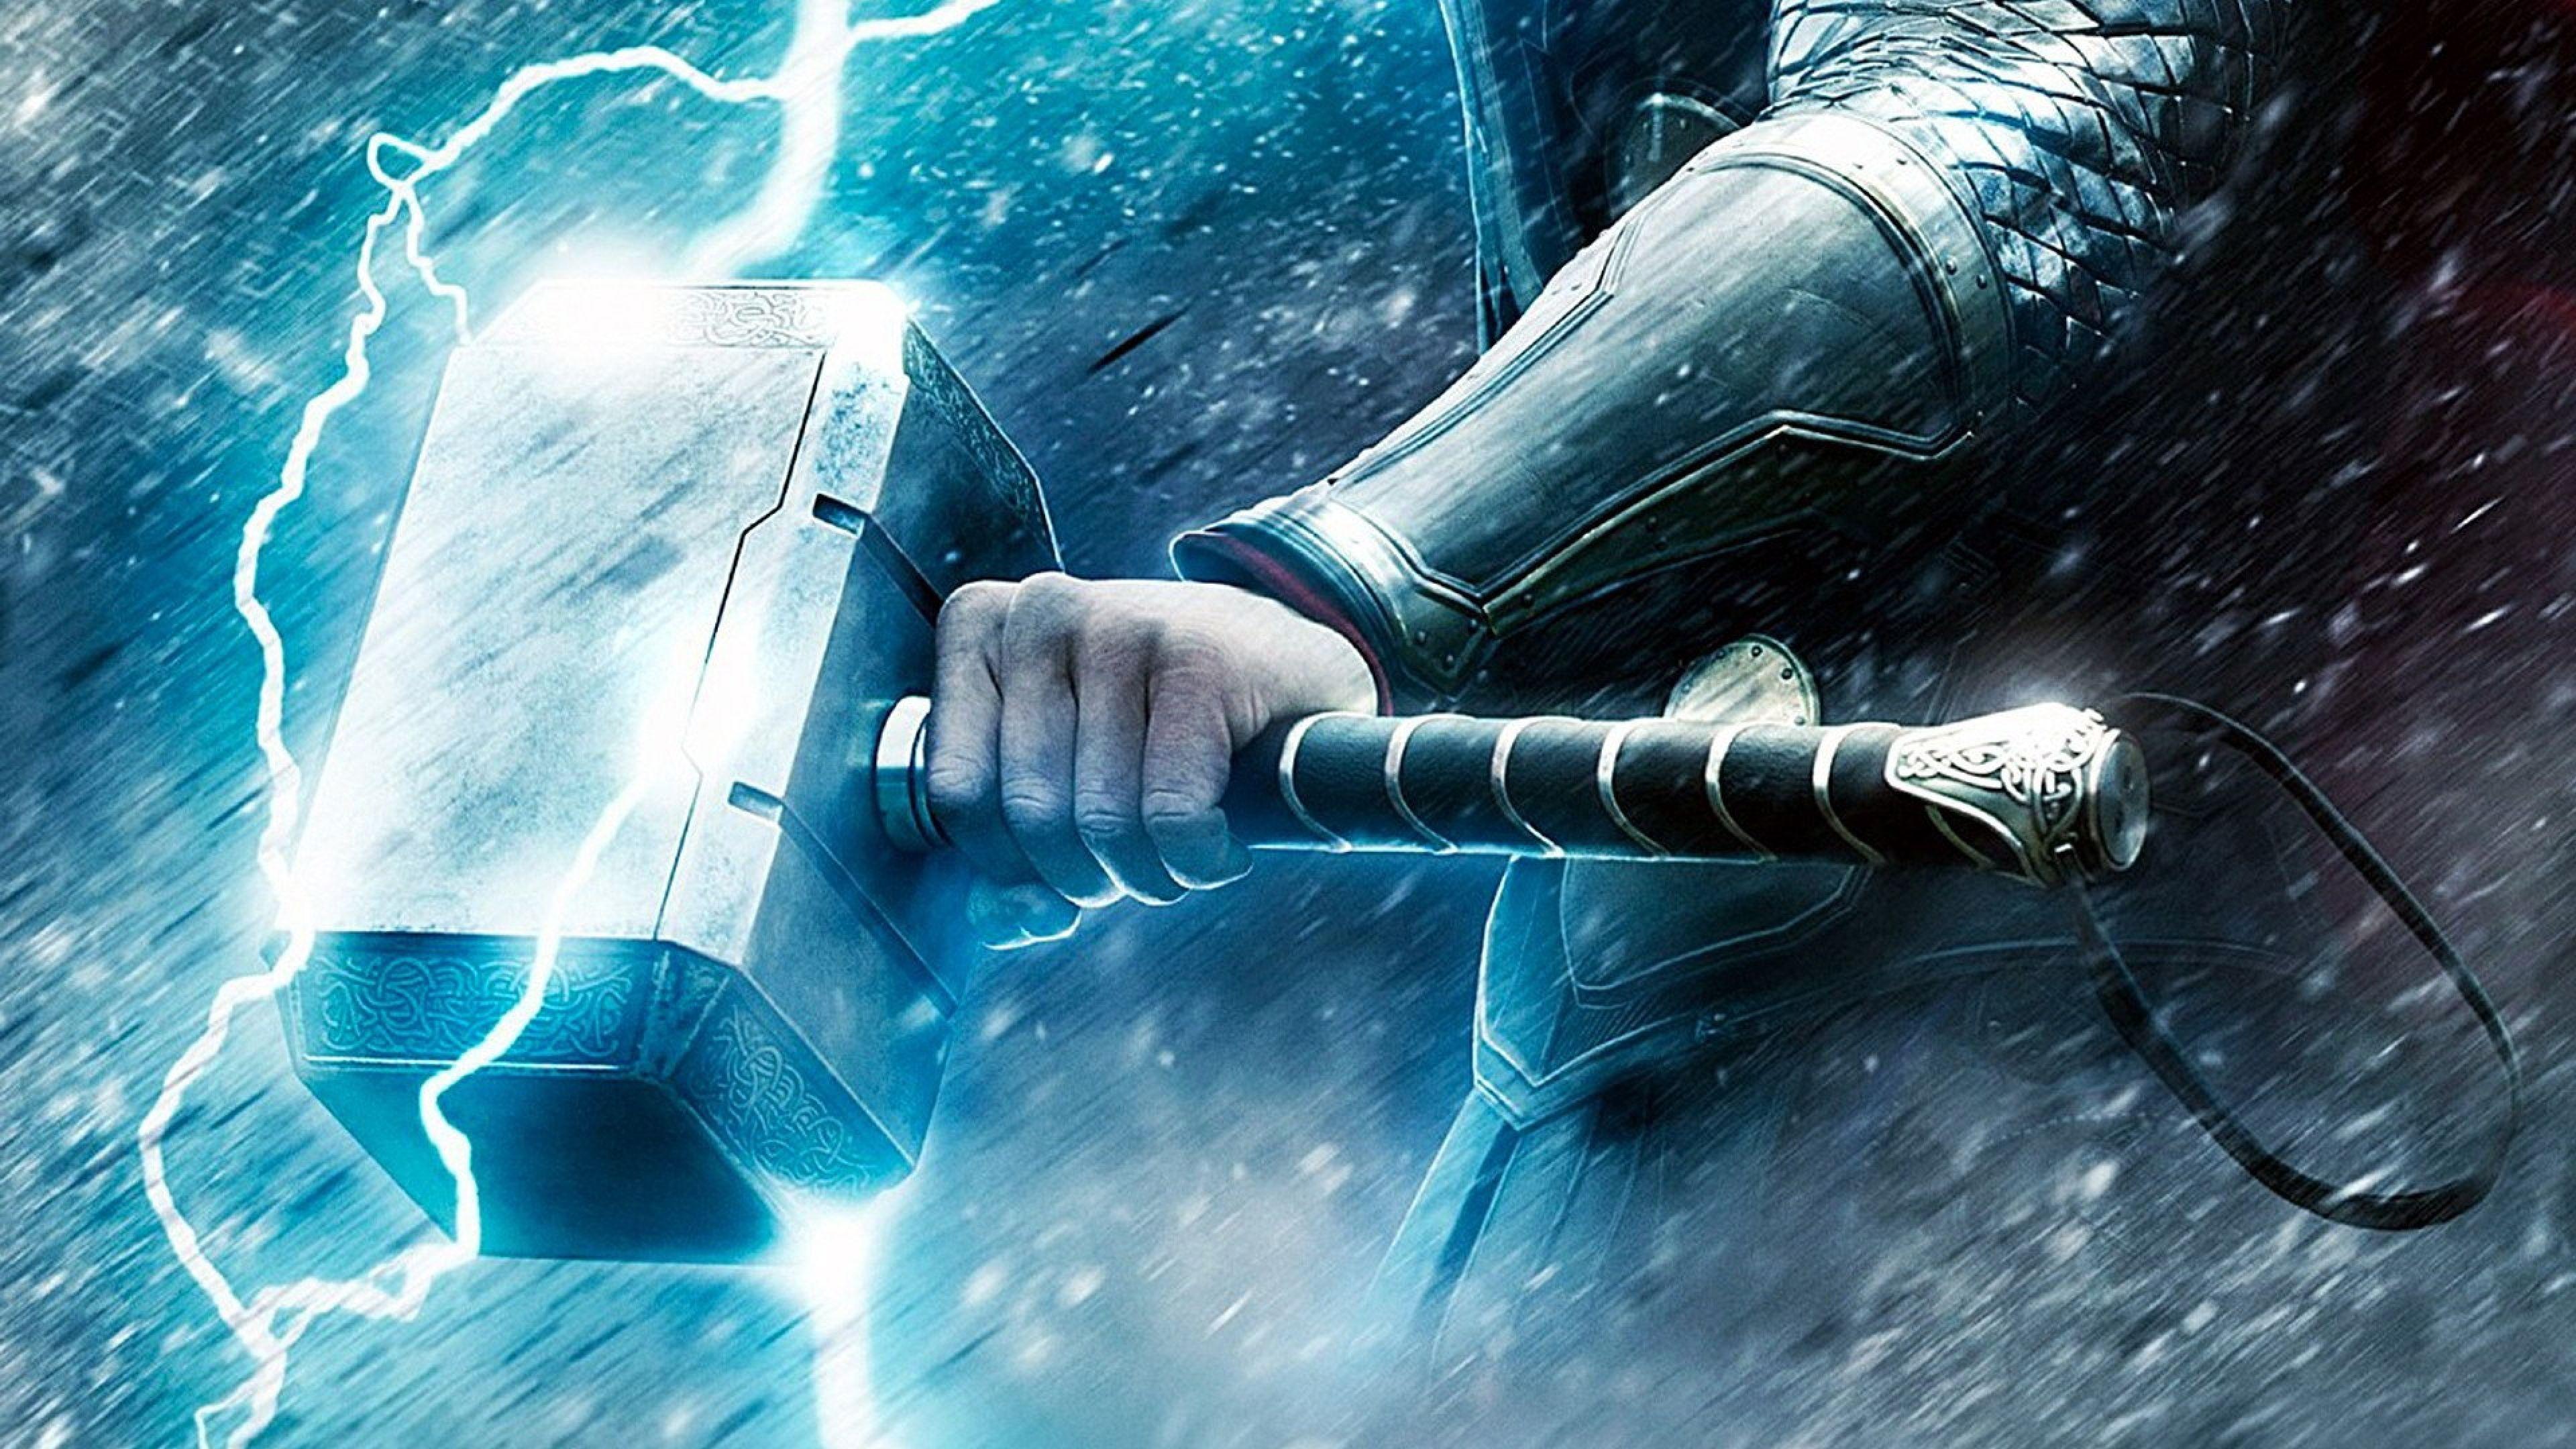 Thor Stormbreaker Lightning 4K Wallpaper #4.2300